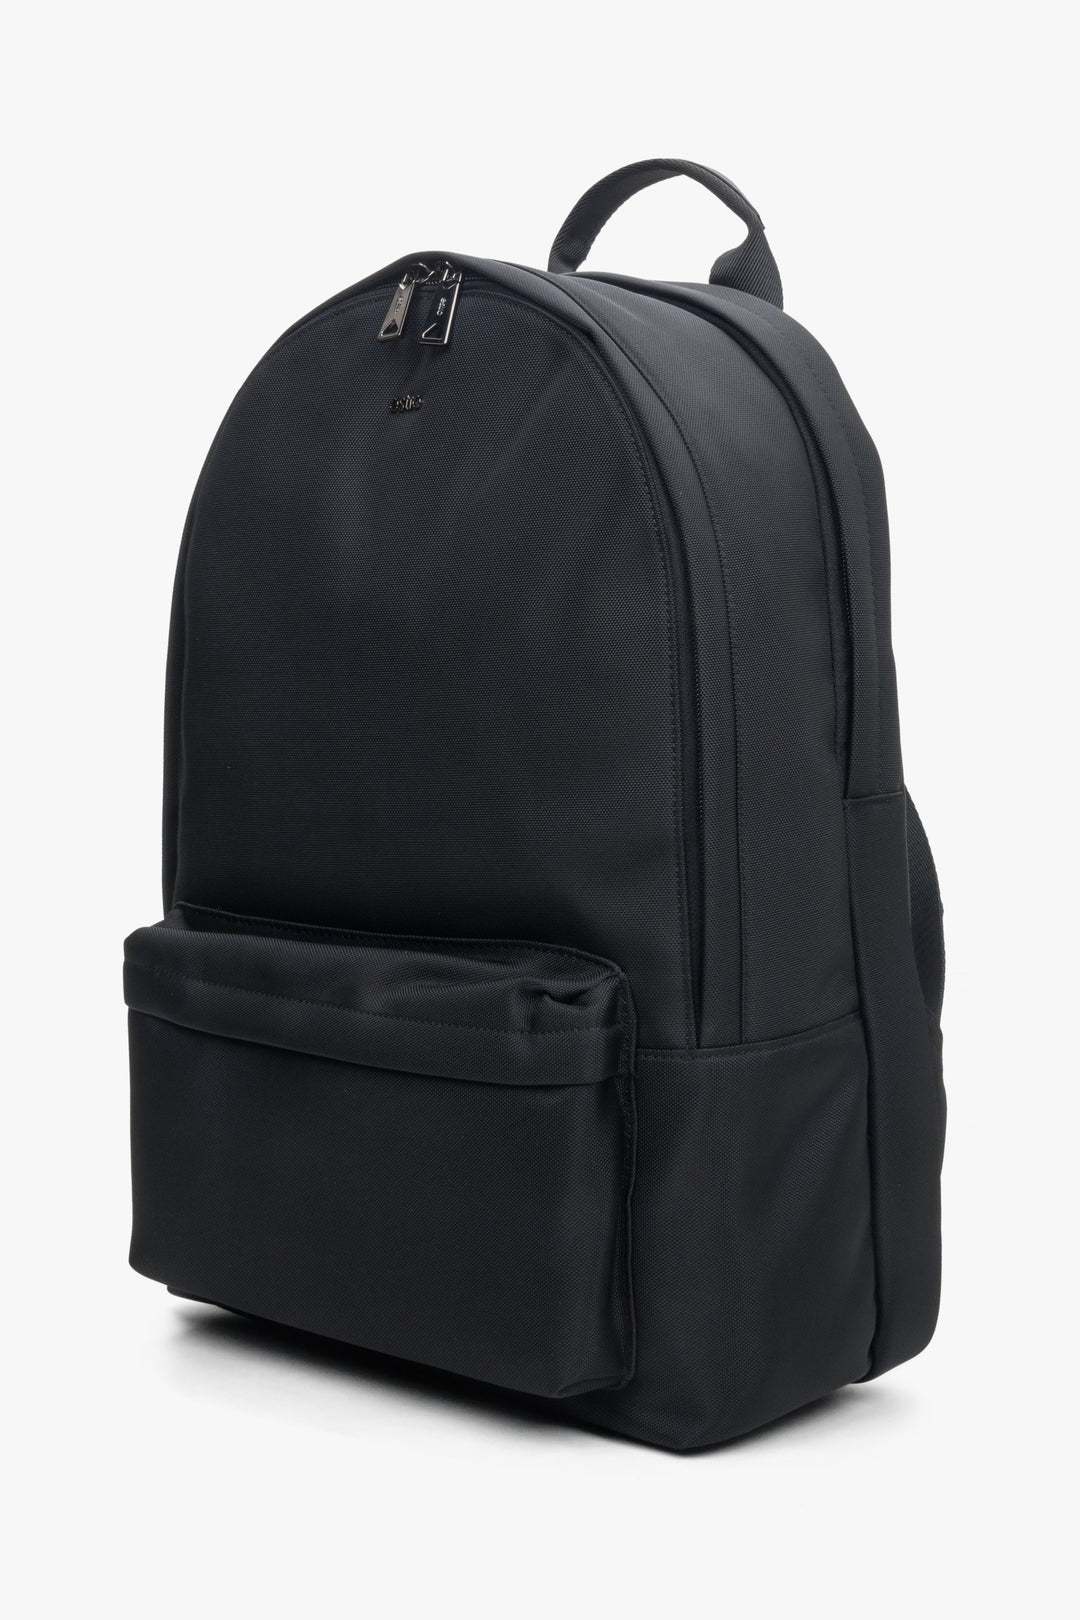 Men's black backpack with soft shoulder straps.